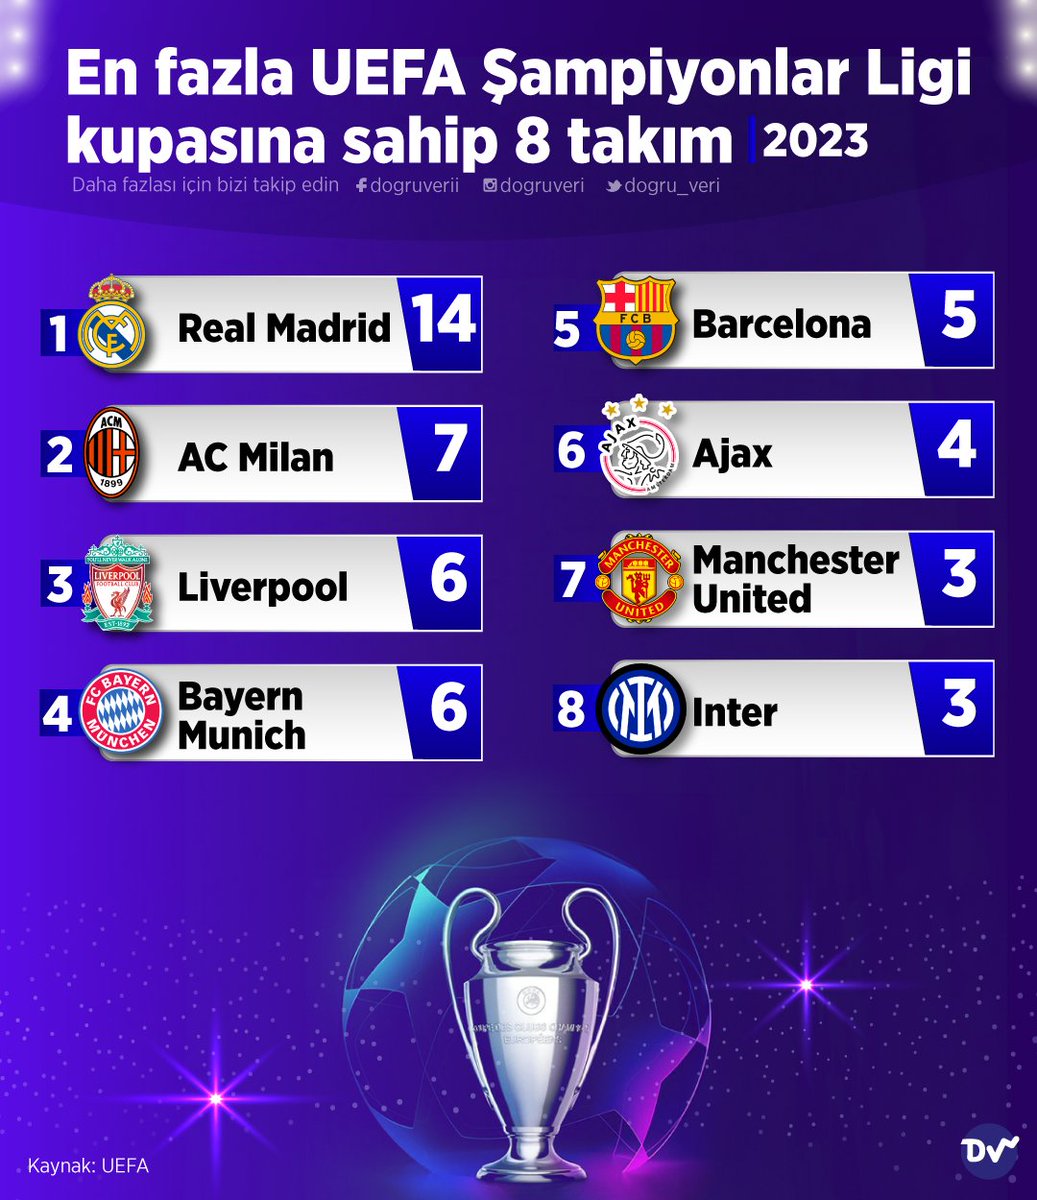 ⚽ En fazla UEFA Şampiyonlar Ligi kupasına sahip 8 takımı sıraladık. Listenin başında 14 kupalı Real Madrid yer alıyor. Real Madrid'i AC Milan, Liverpool ve Bayern Munich takip ediyor.